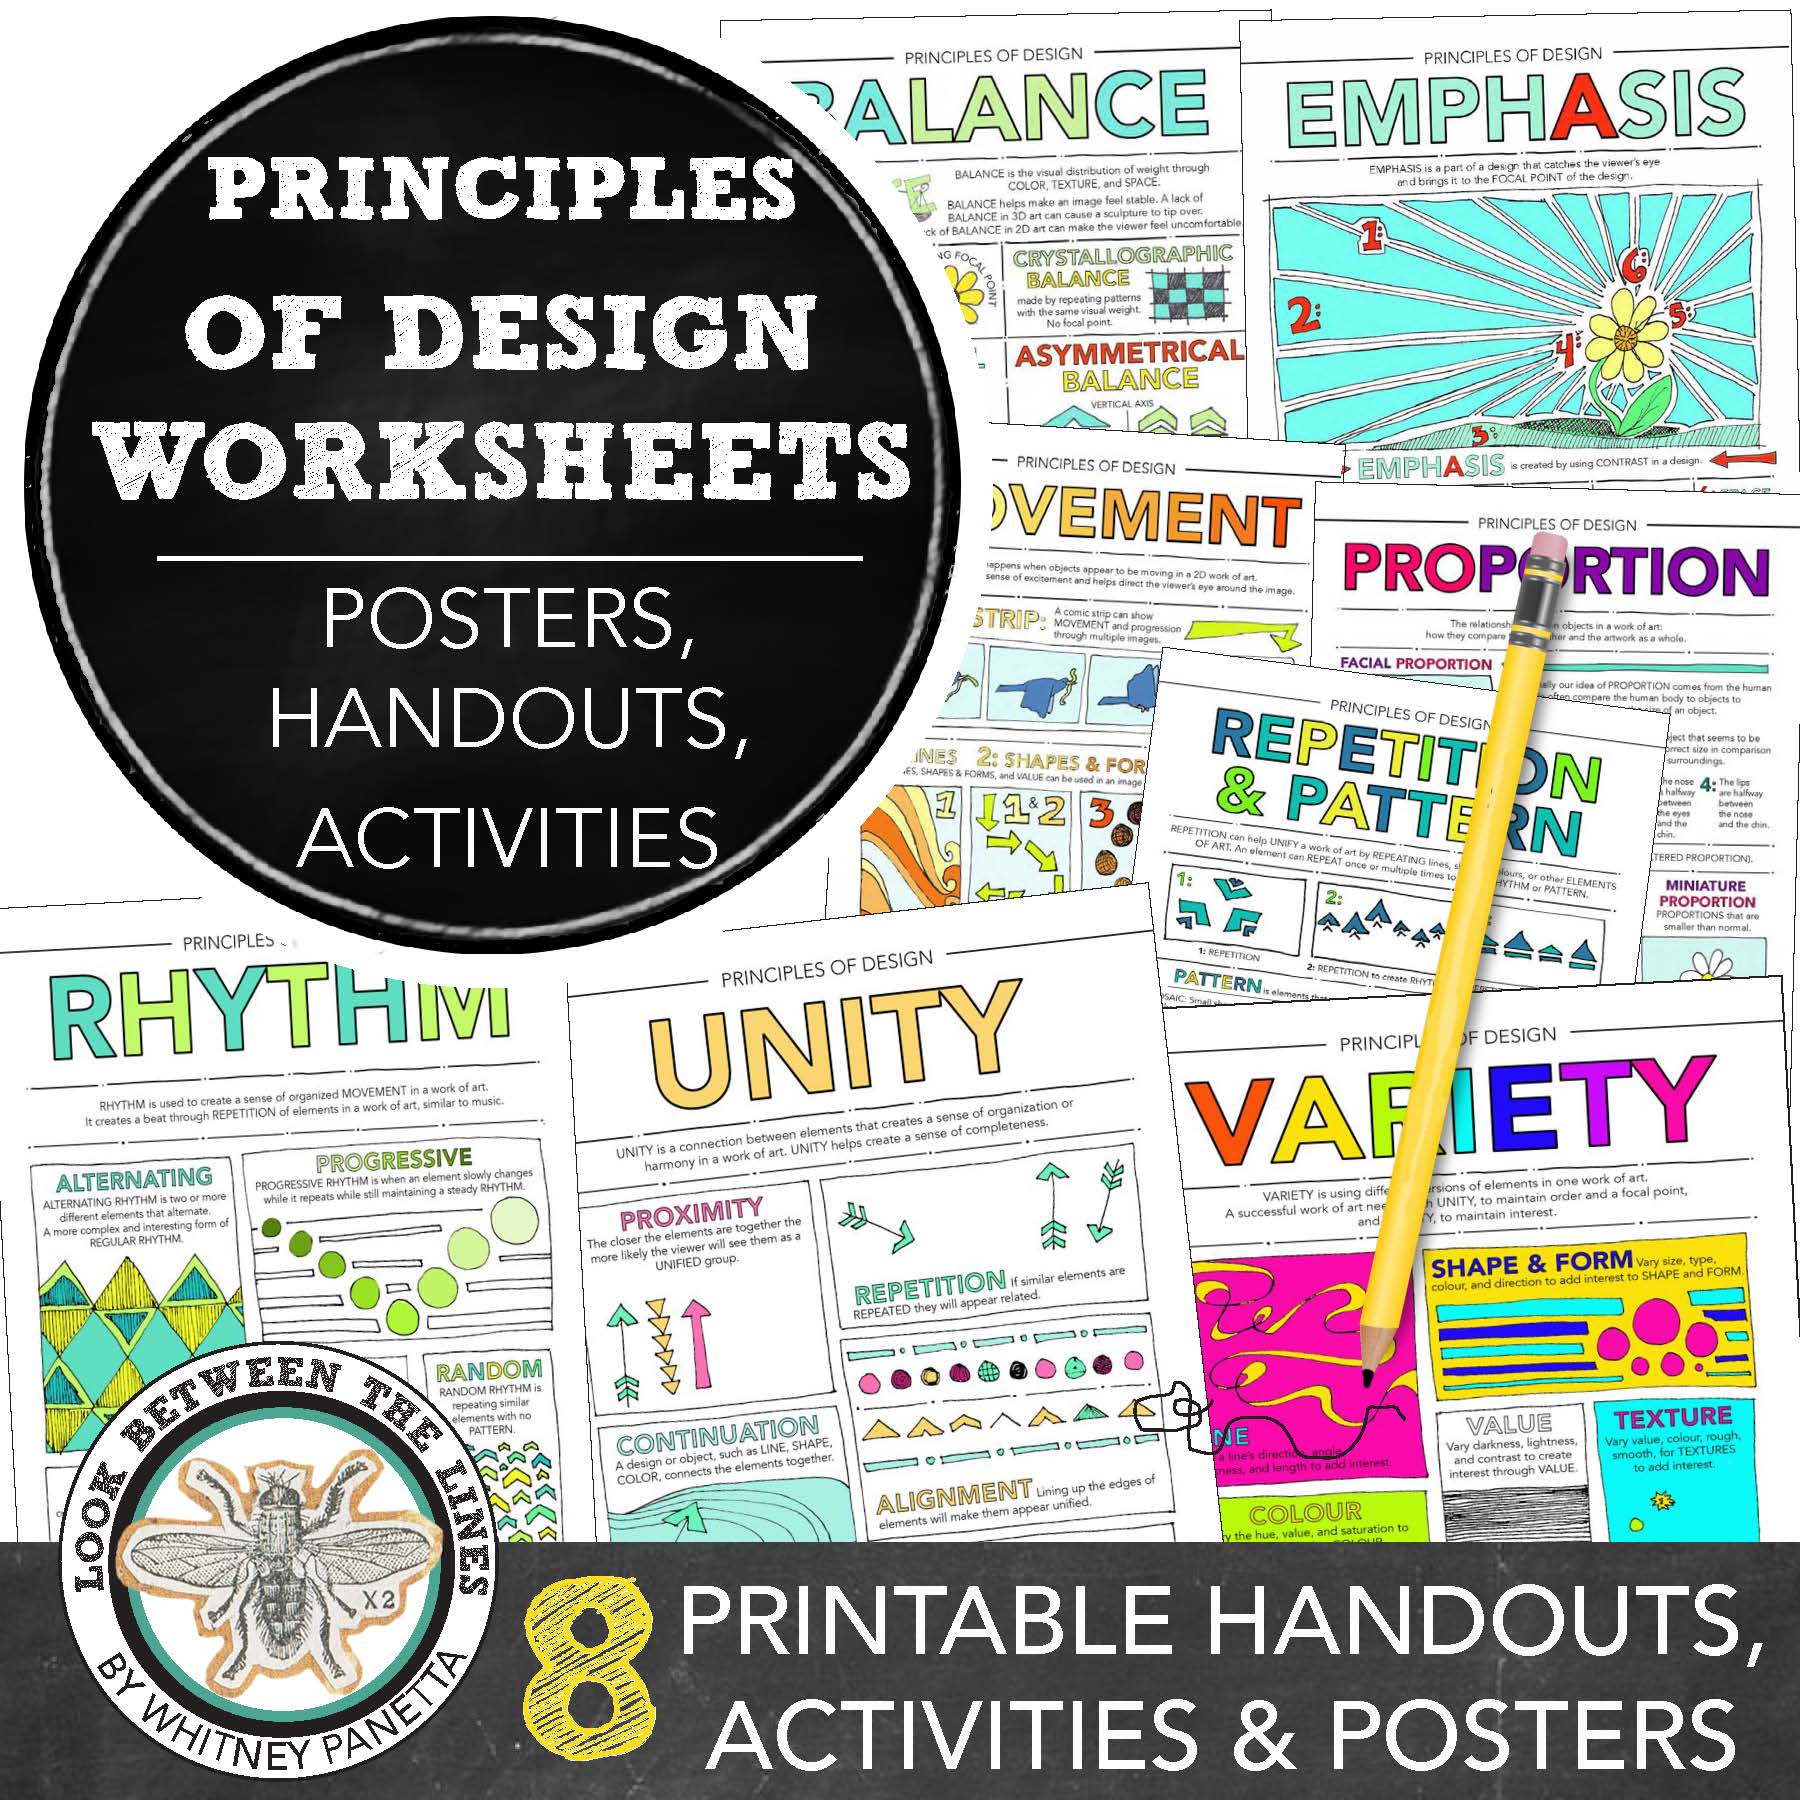 8-principles-of-design-worksheets